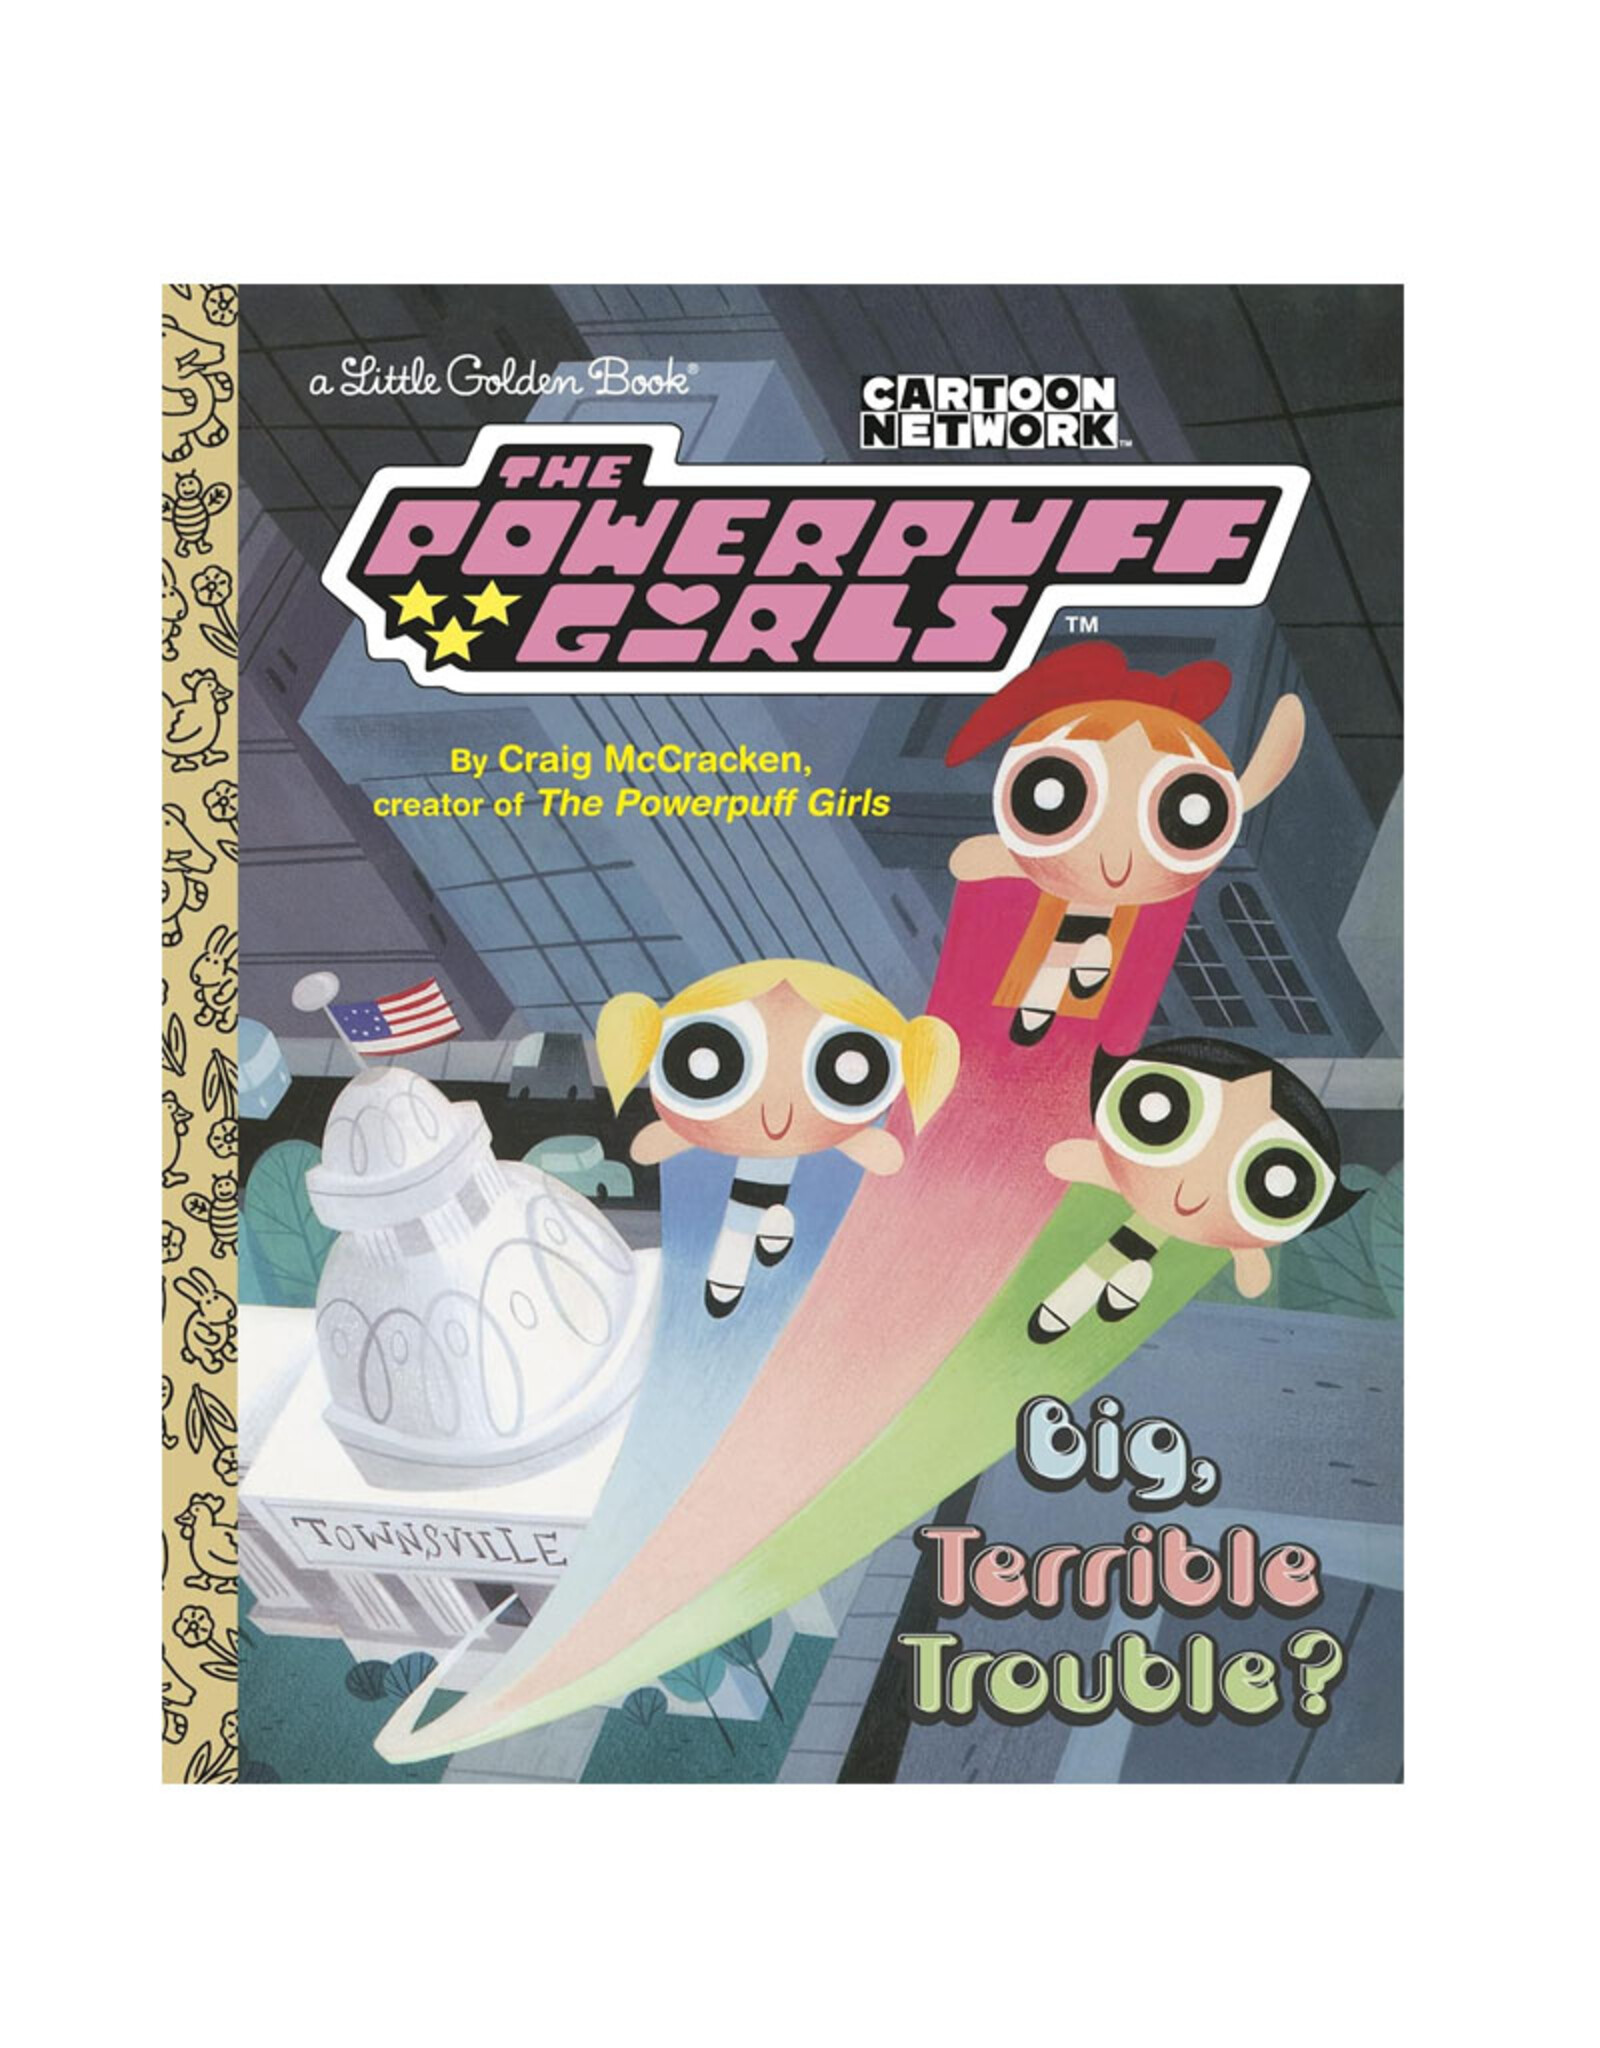 Little Golden Book Little Golden Book: The Powerpuff Girls - Big, Terrible Trouble?